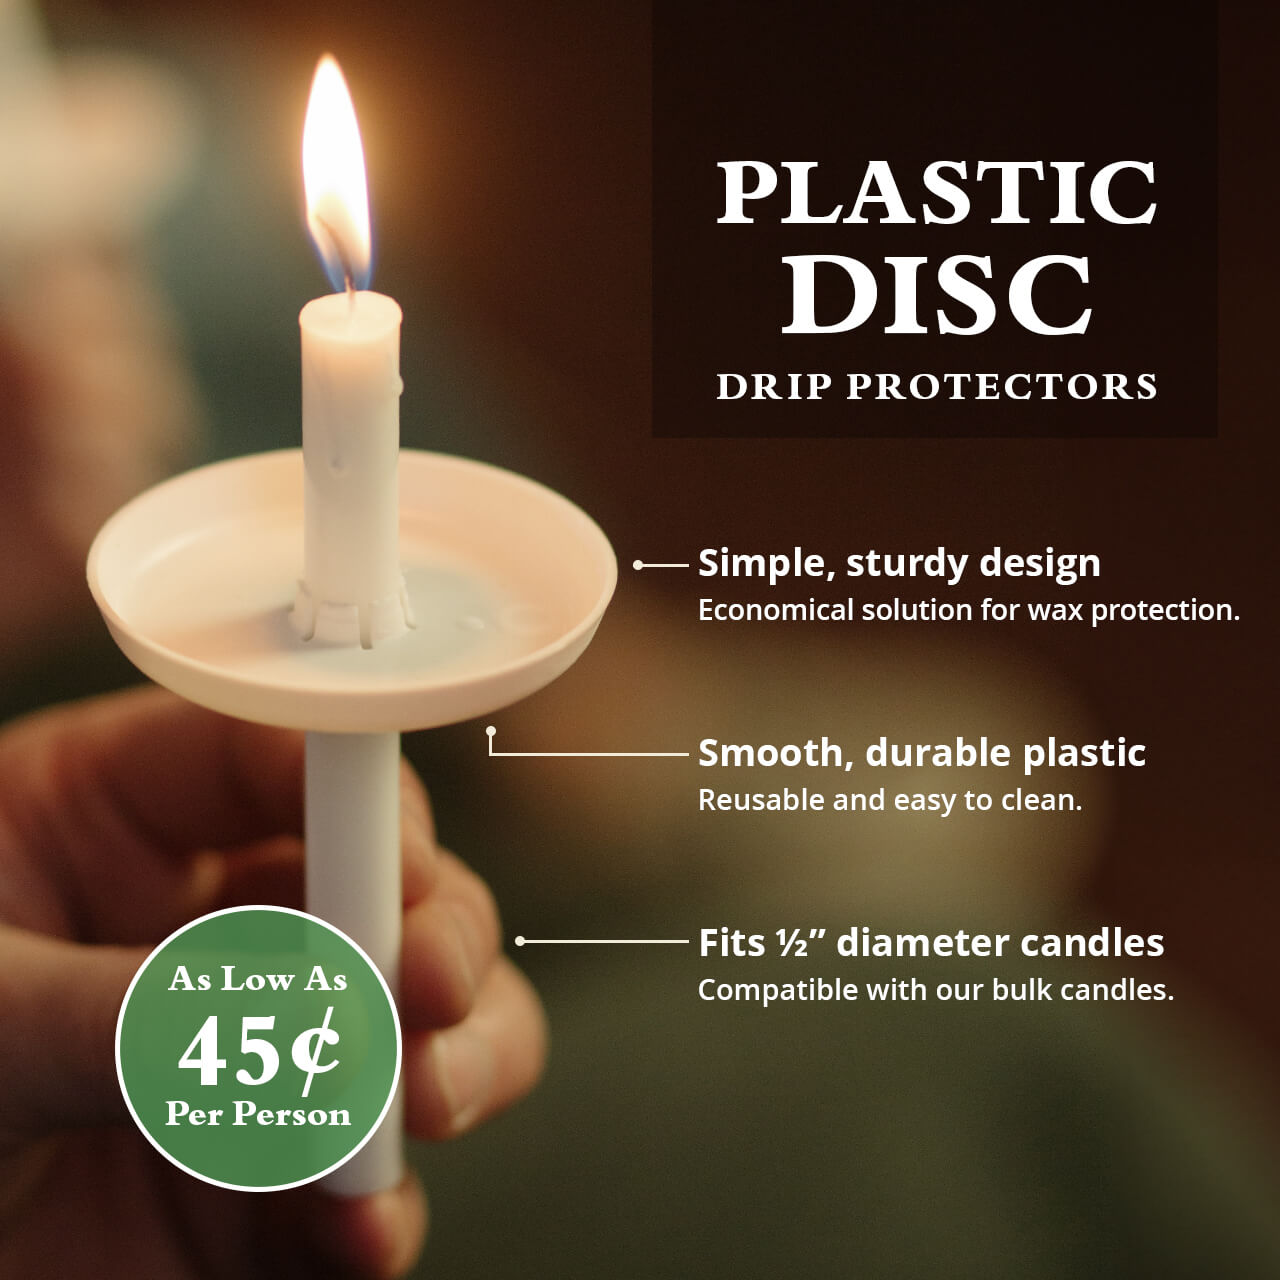 Plastic Disc Drip Protectors